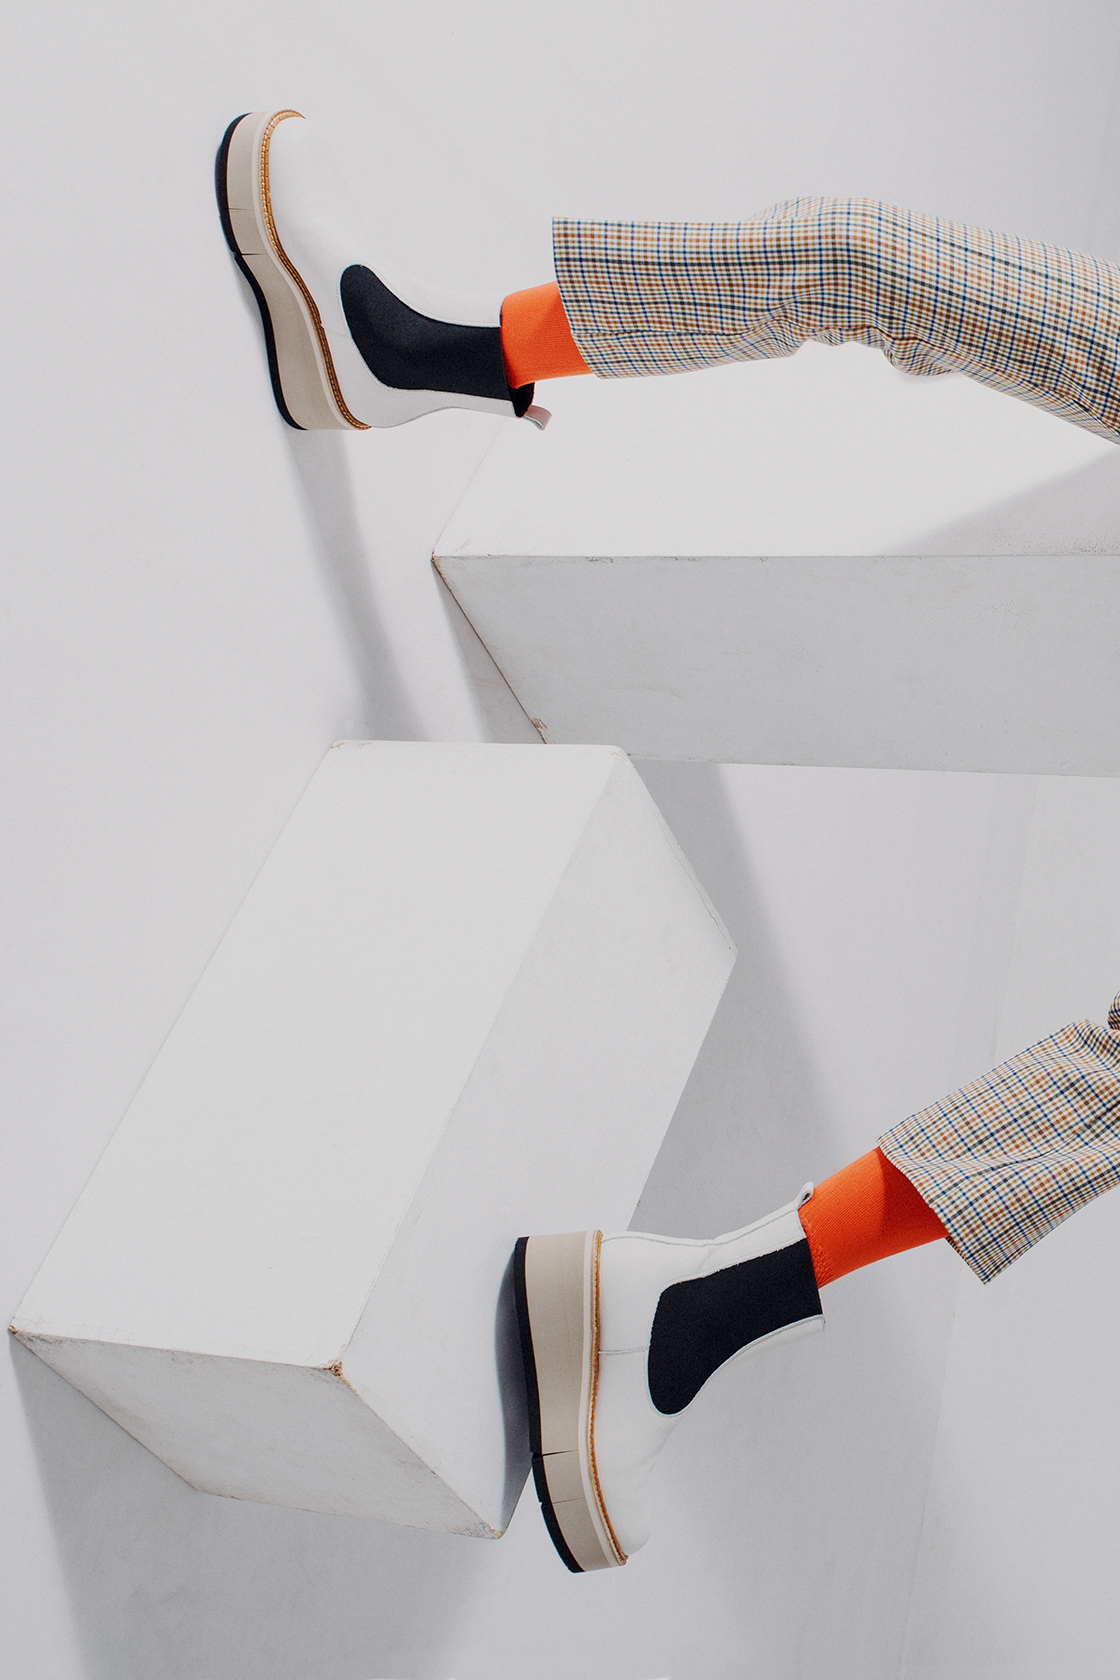 панталон Hugo Boss от Collective,  чорапи  Simeon Atanasov, обувки  Paloma Barcelo от Collective